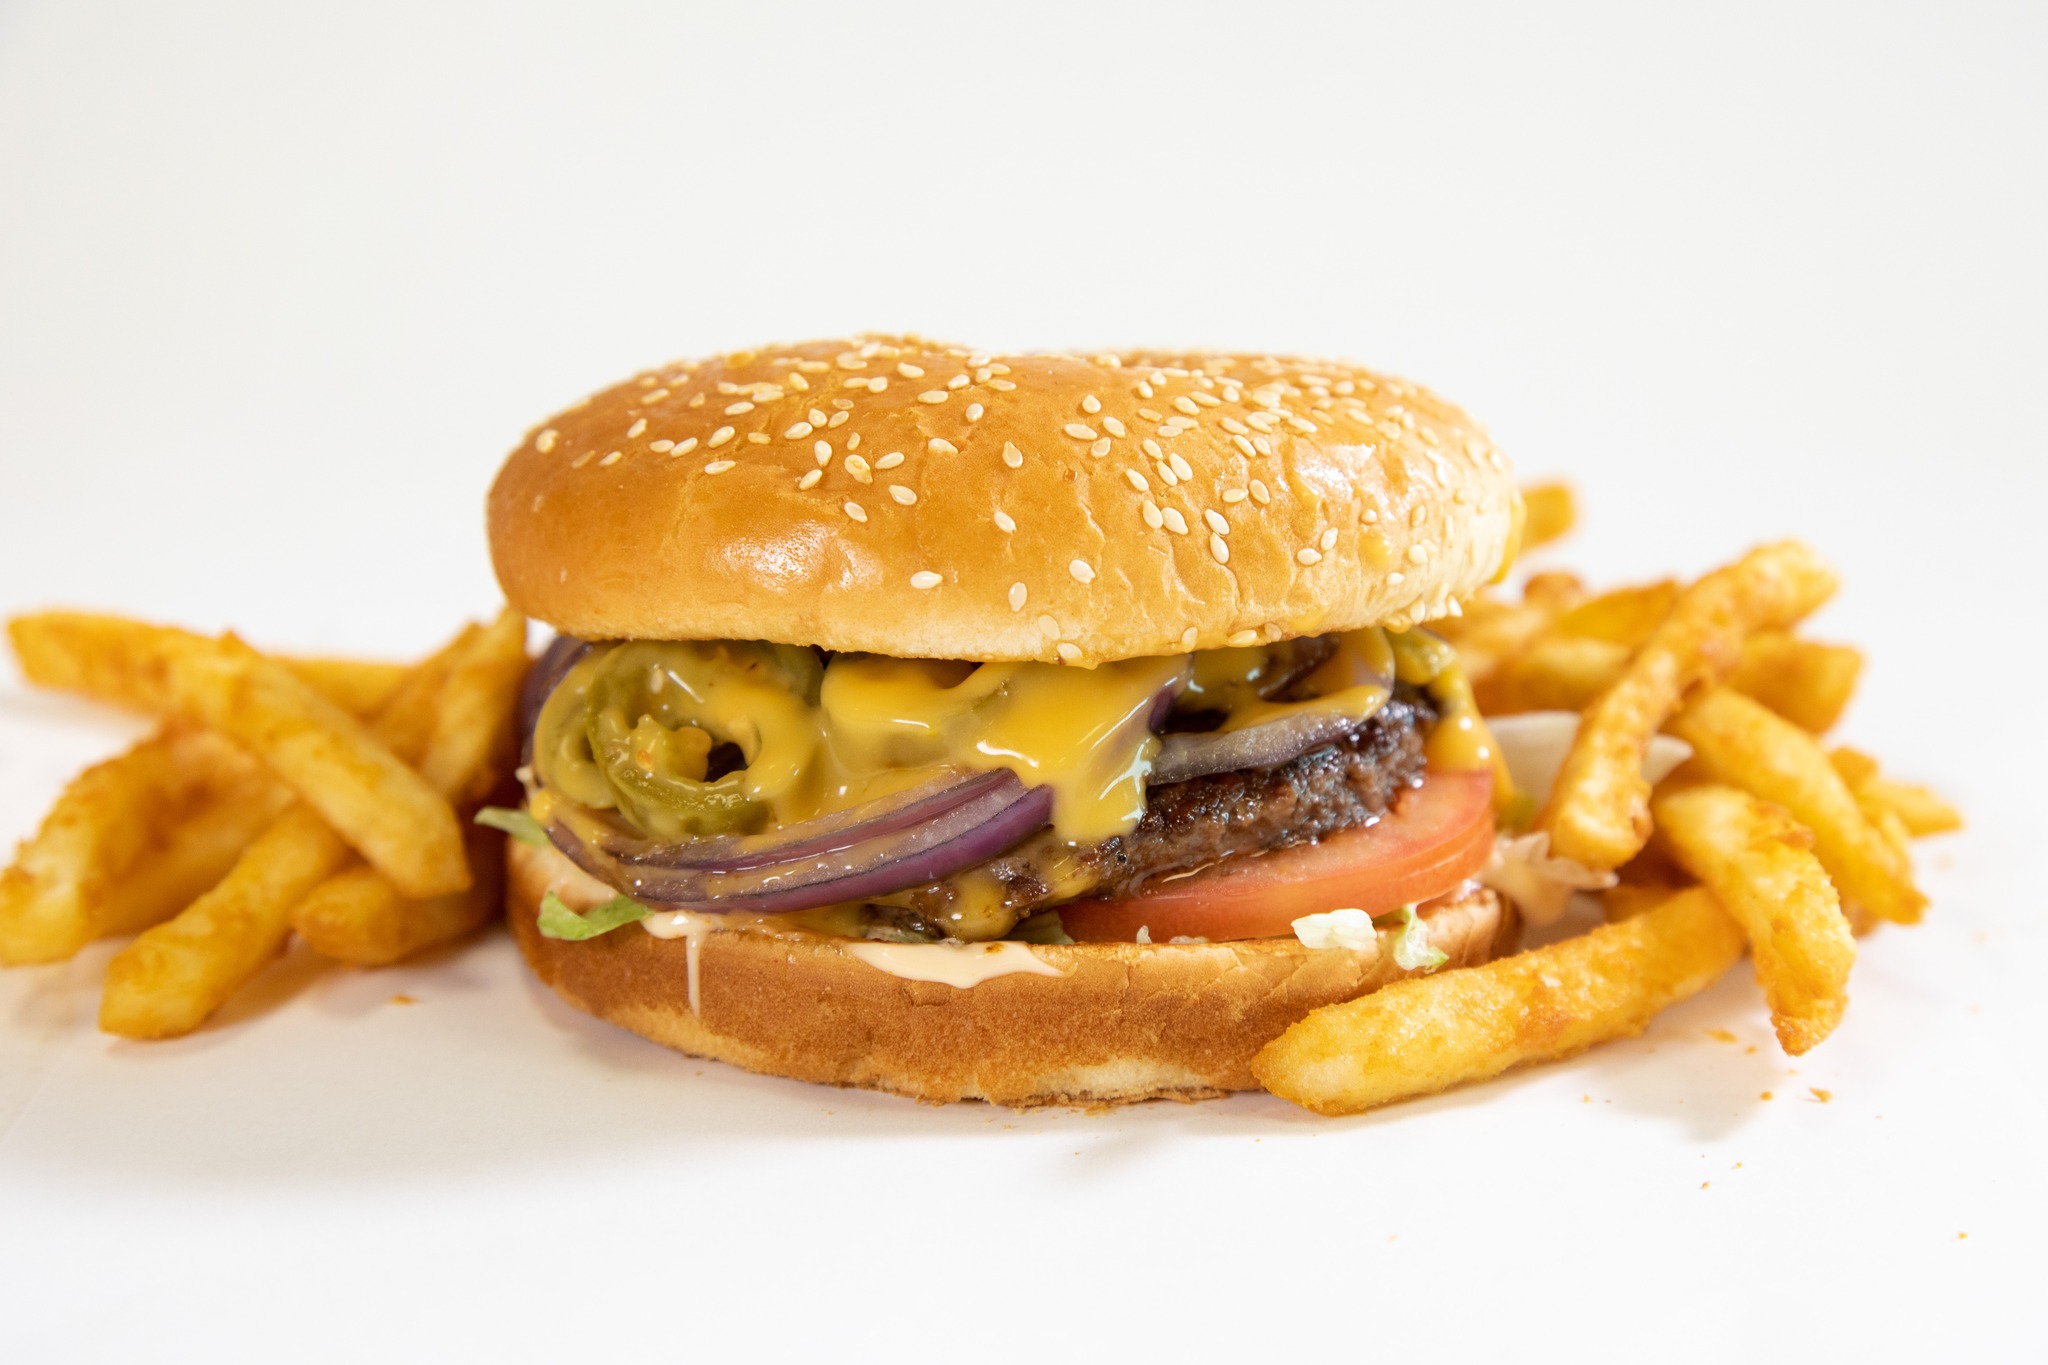 A delicious looking cheeseburger at Big Jim's